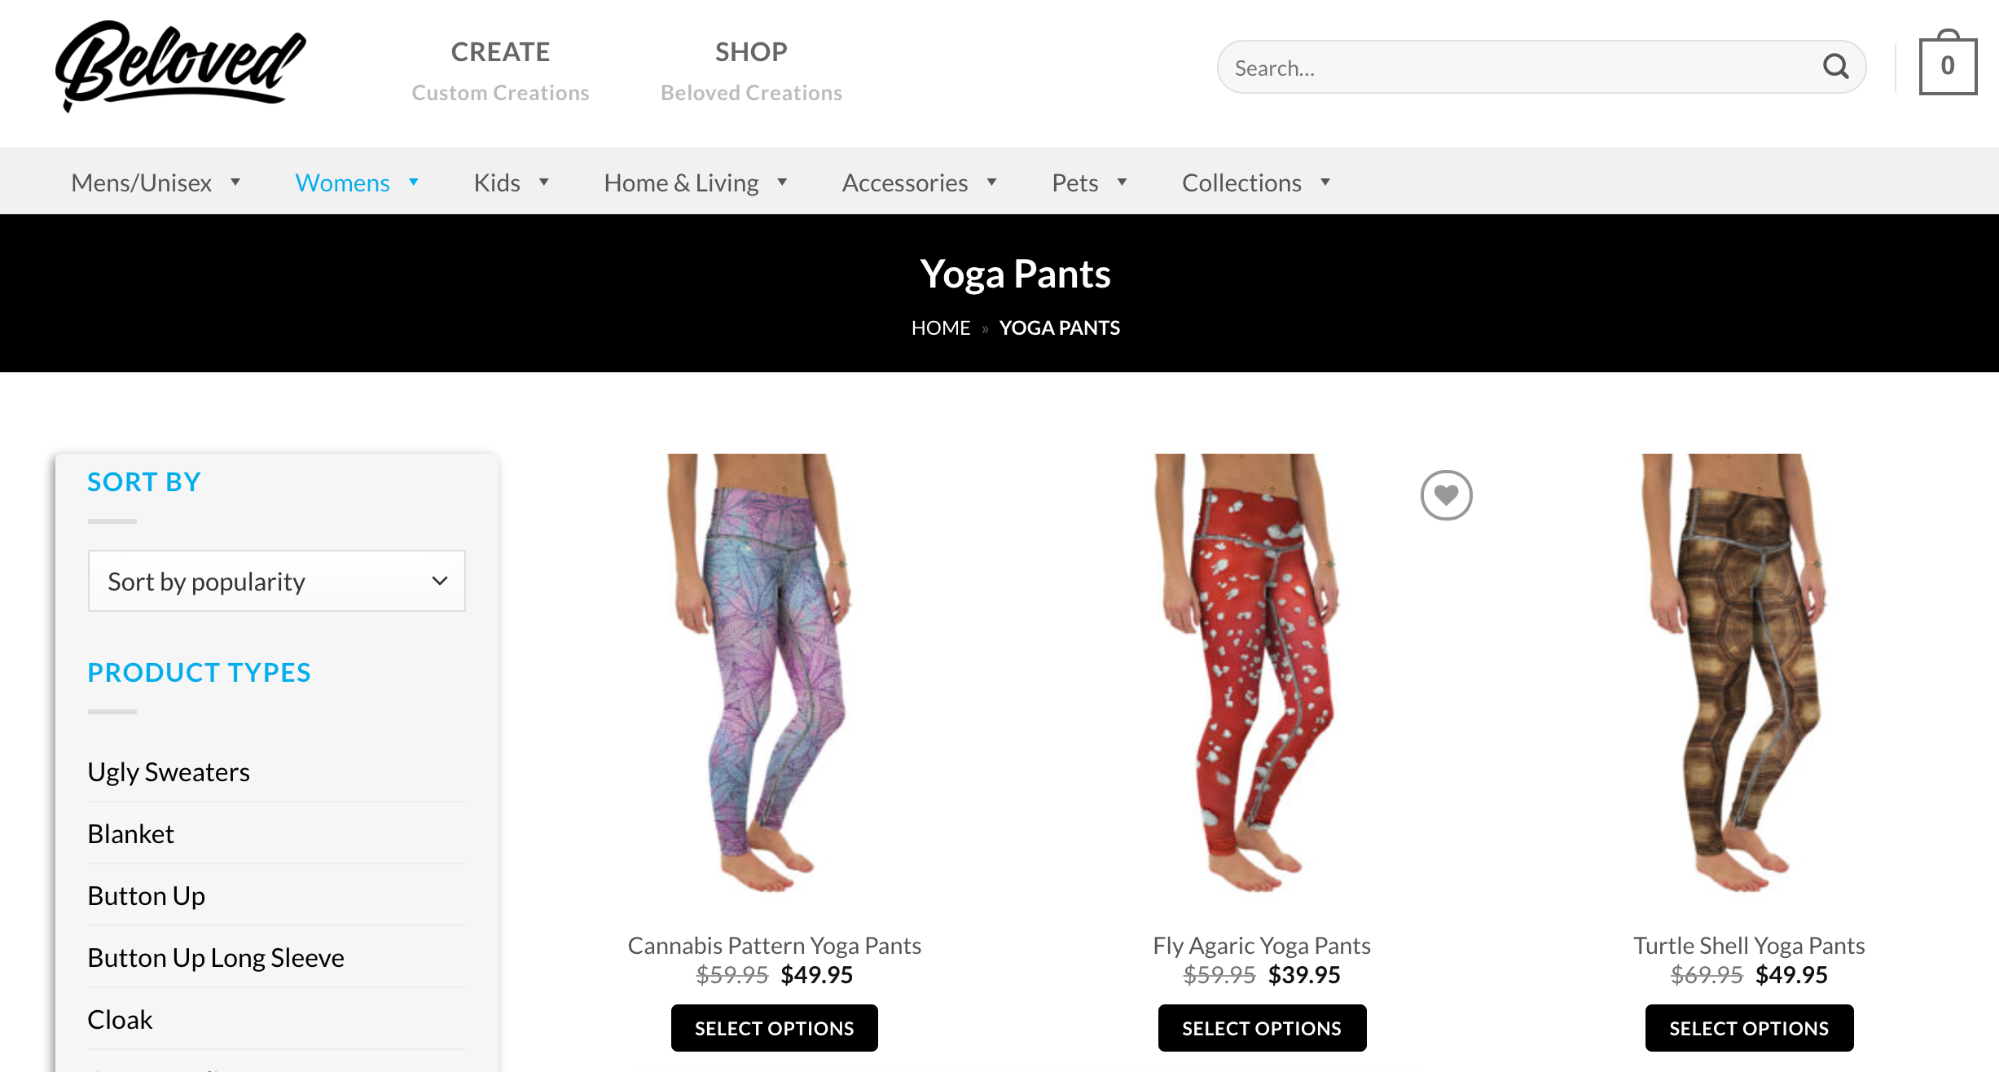 All-over print yoga pants